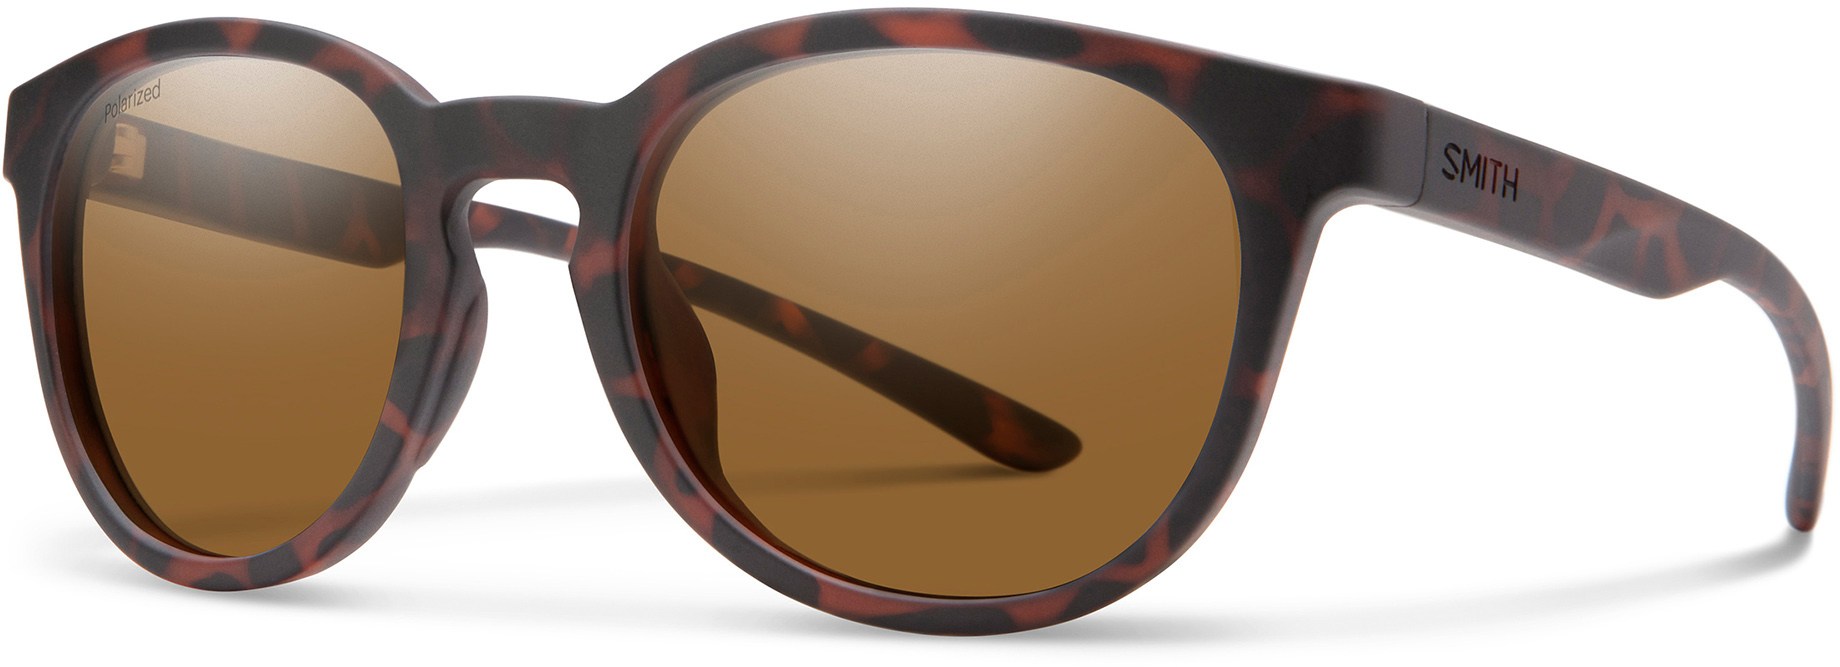 Солнцезащитные очки Eastbank Core Smith, коричневый бокс уилл смит will smith 8 товар с нашей картинкой